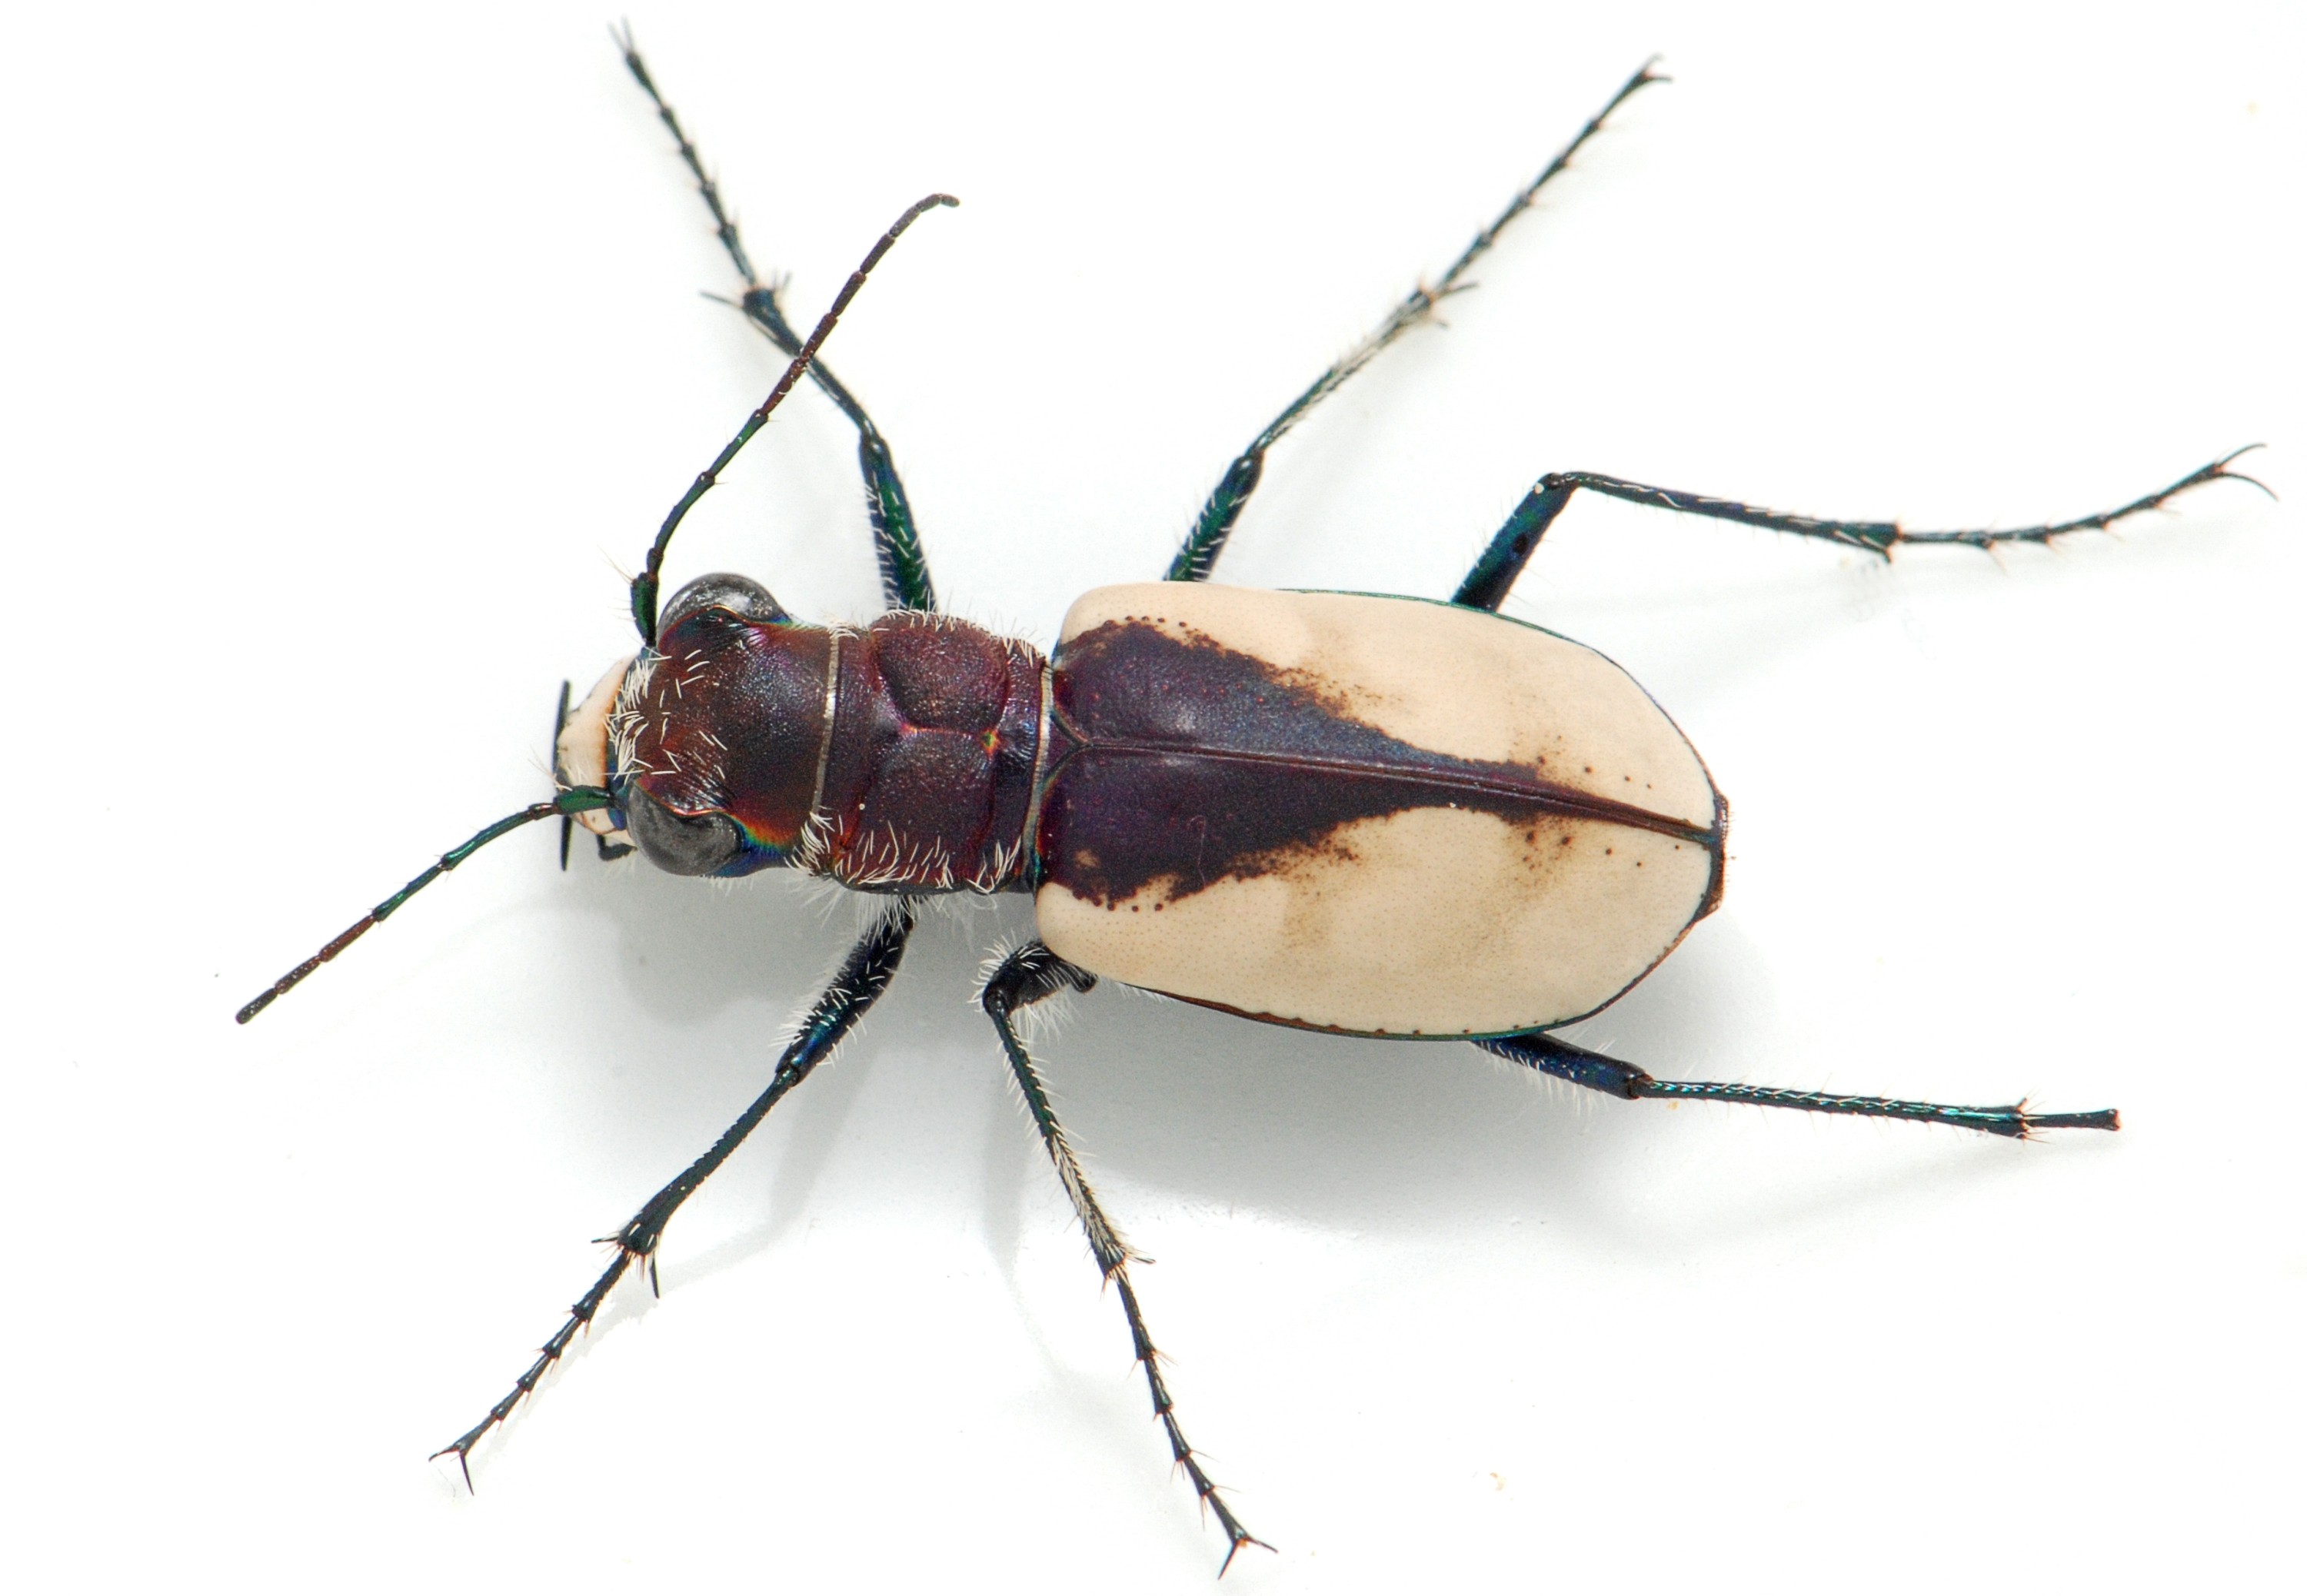 210705-gibsons-beetle-sample-3000px.jpg